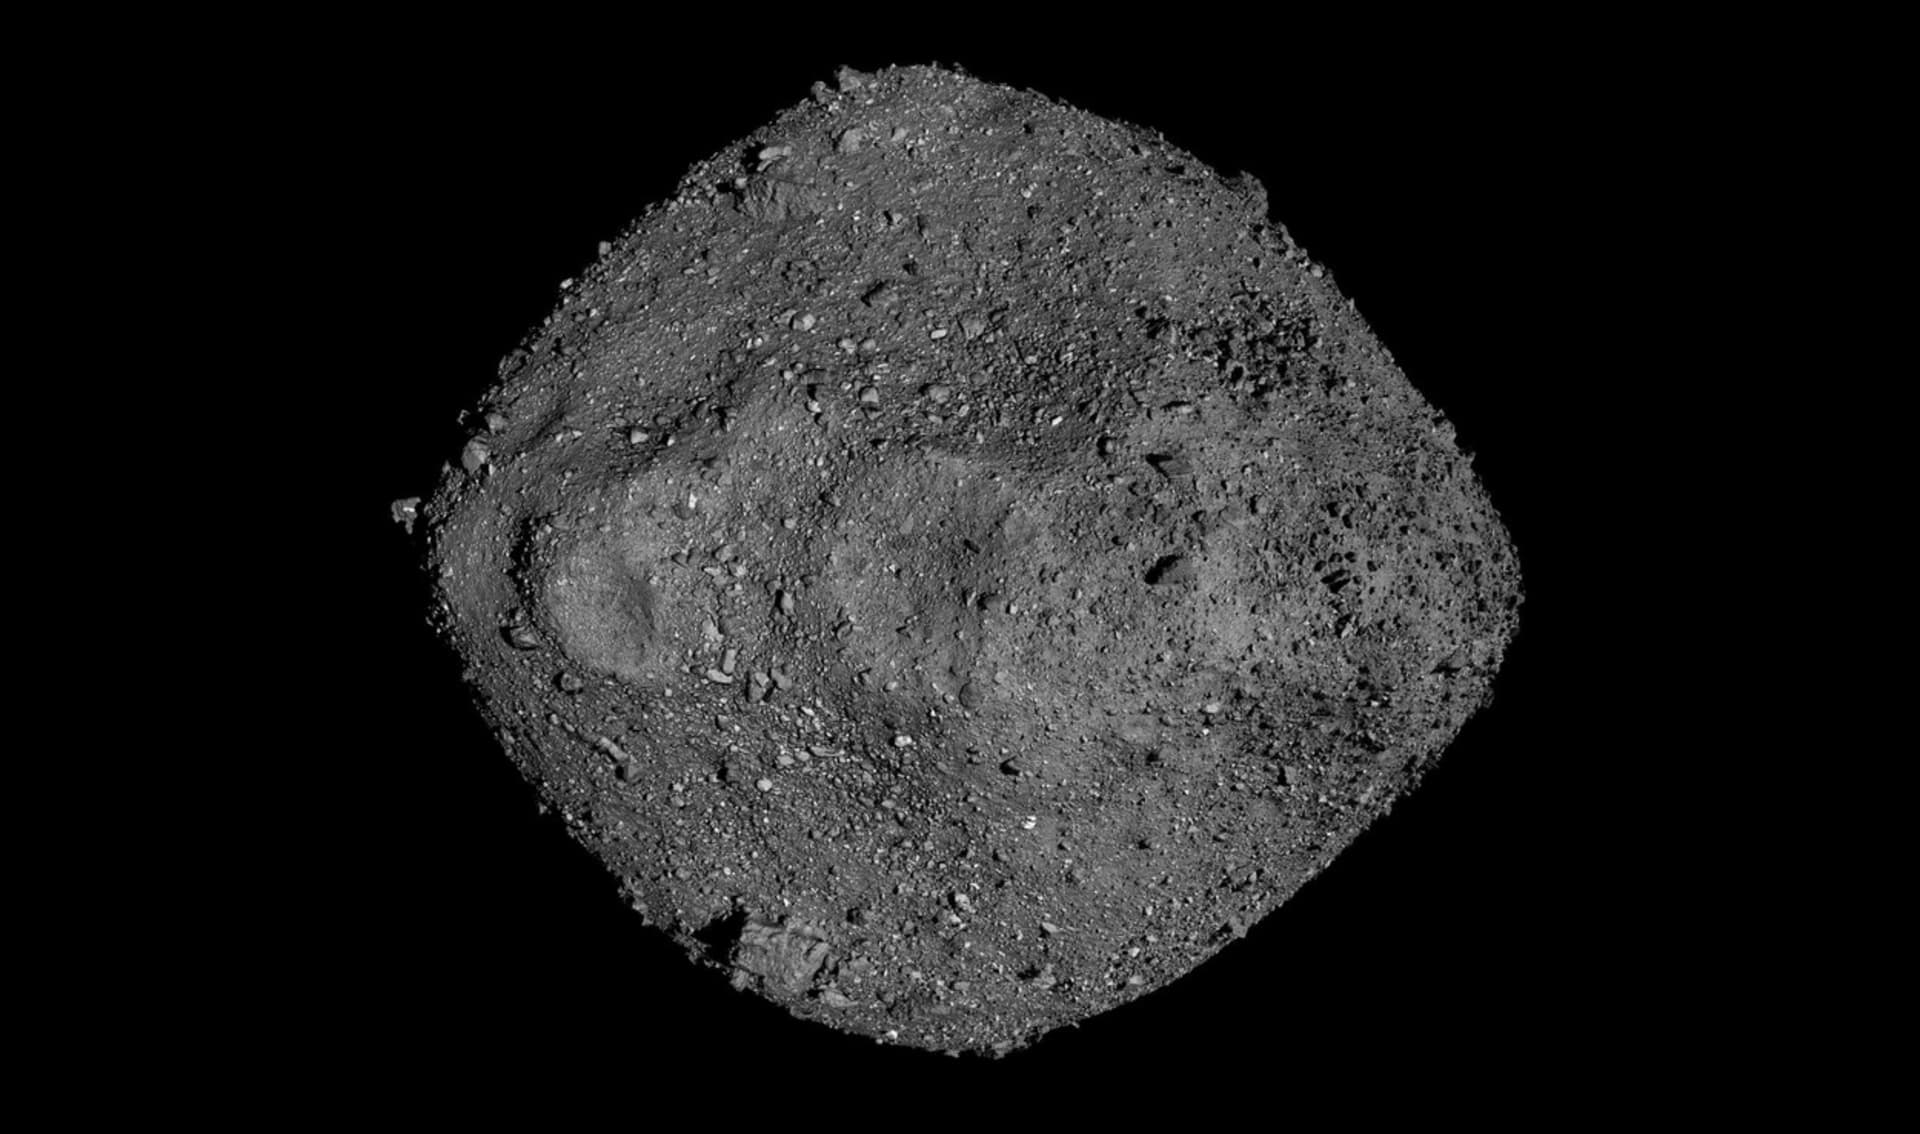 3D zobrazení asteroidu Bennu